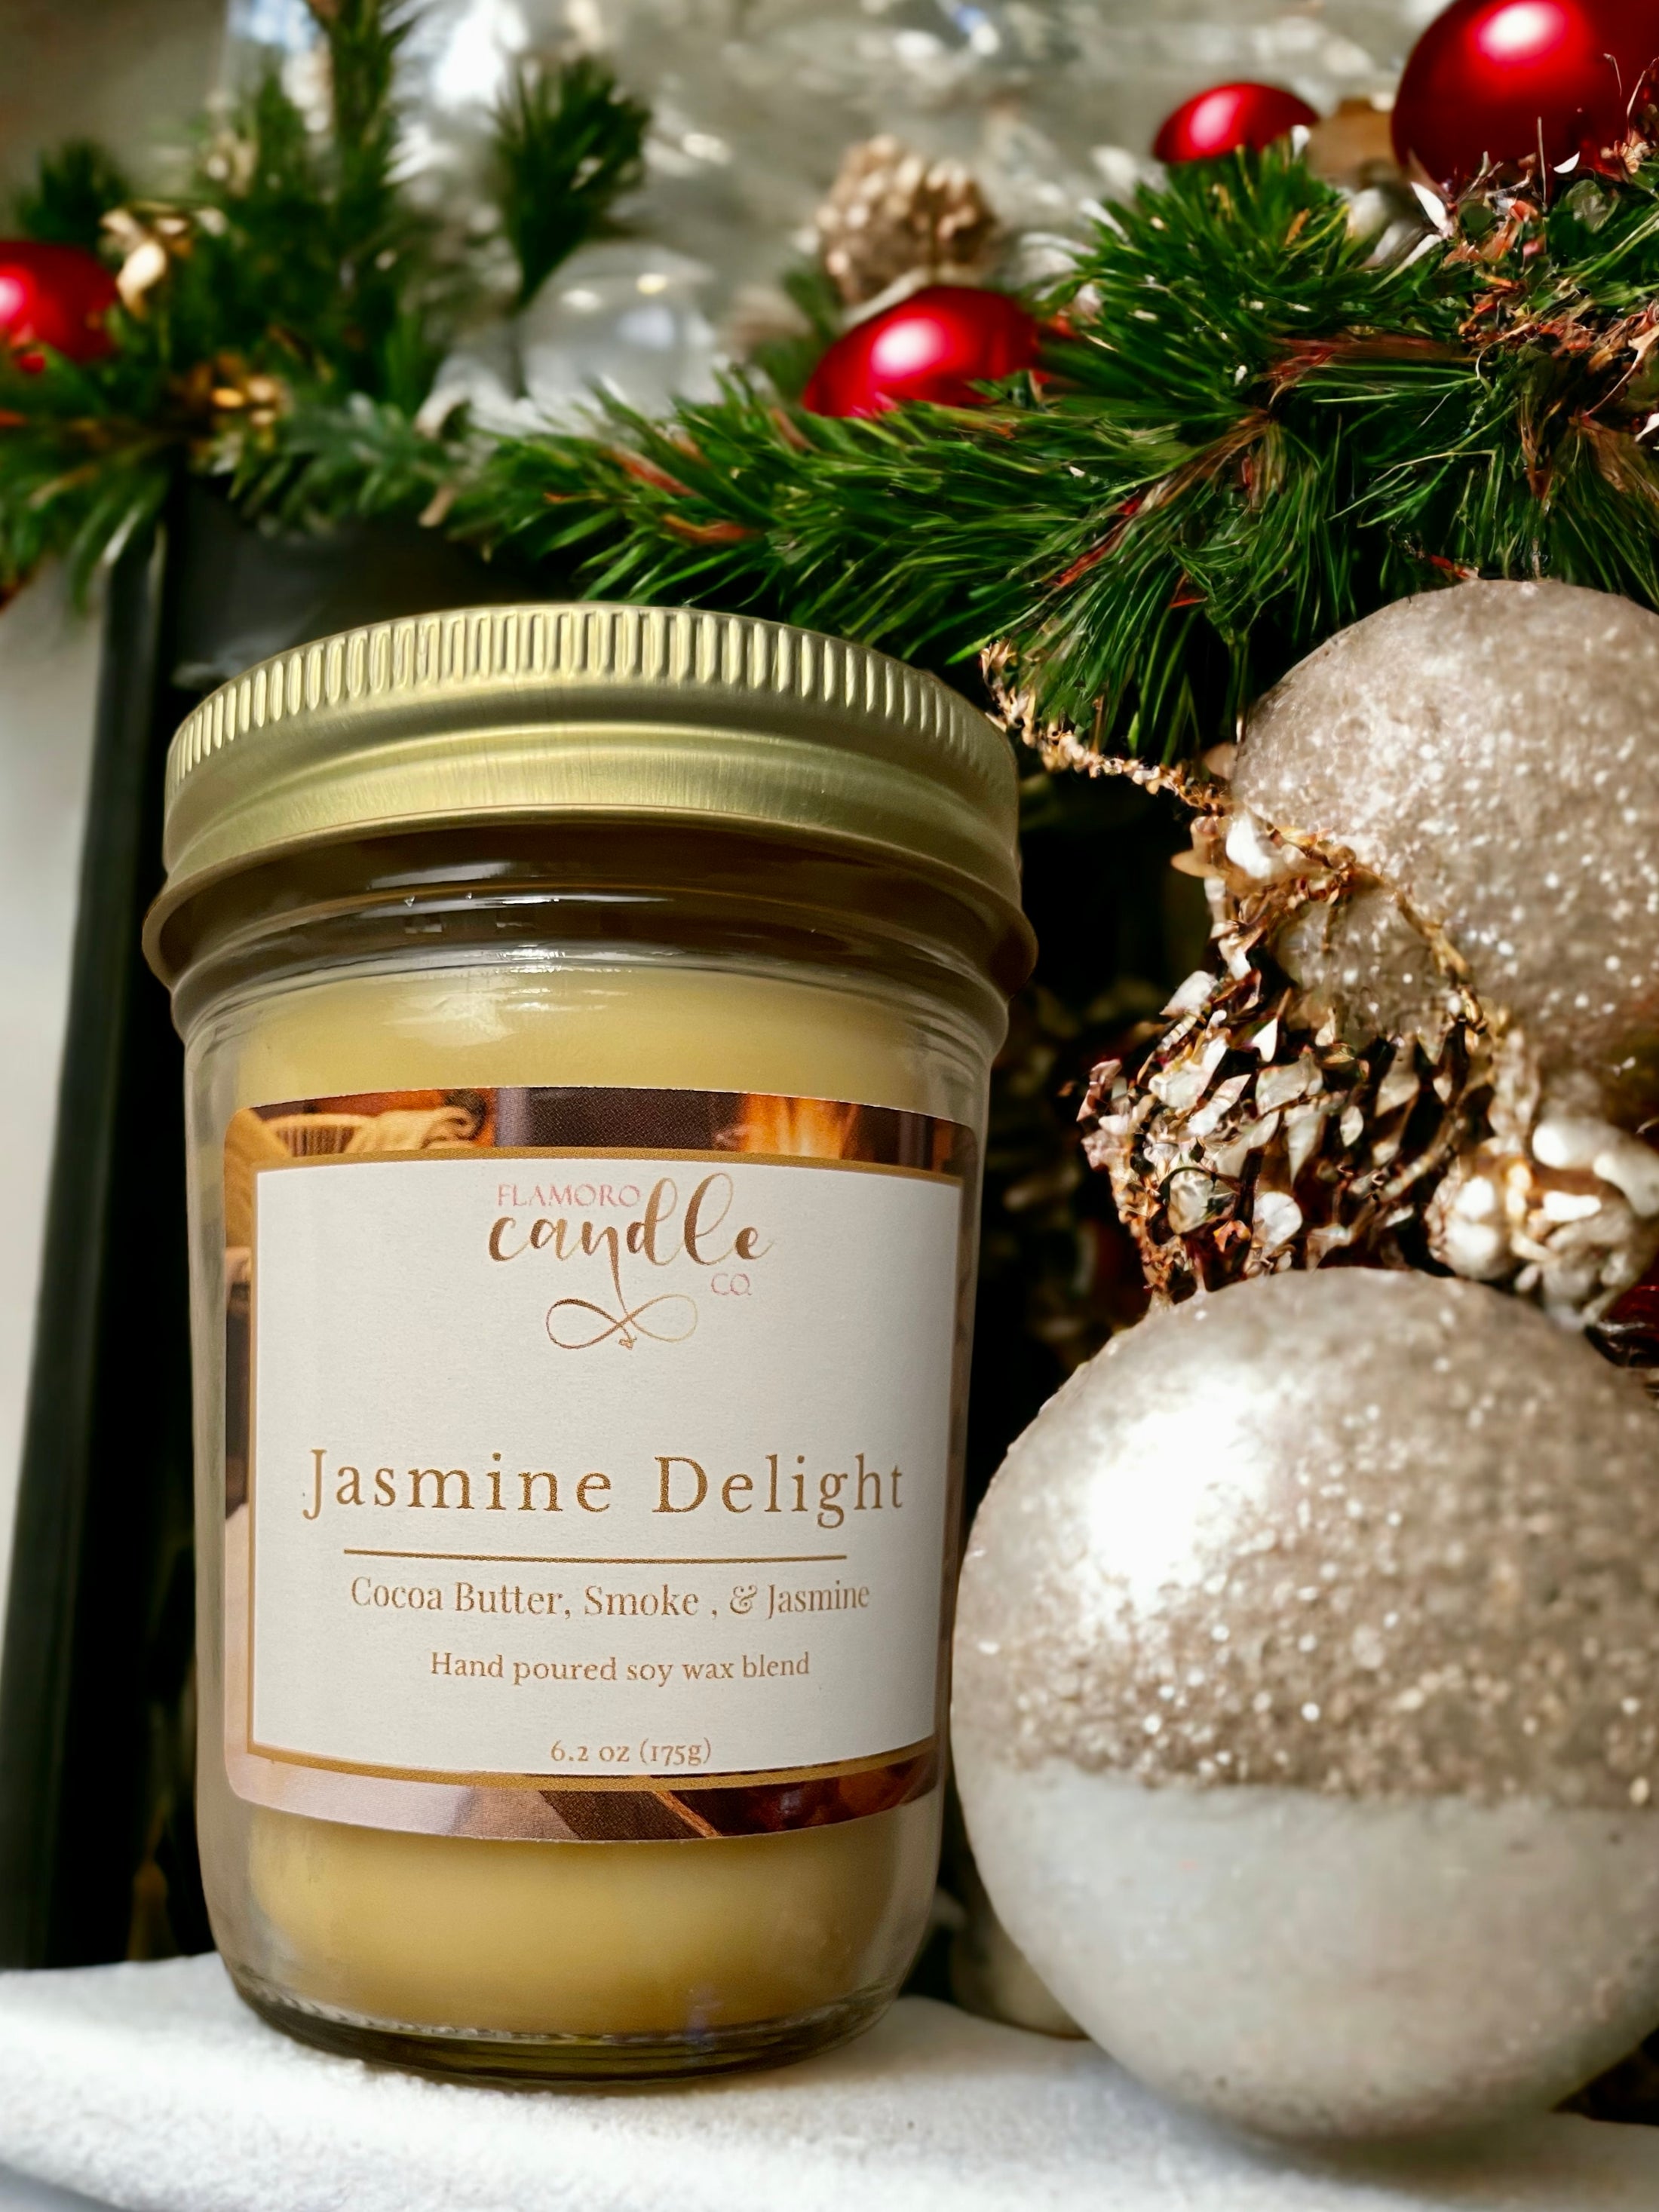 Jasmine Delight - Flamoro Candle Co.